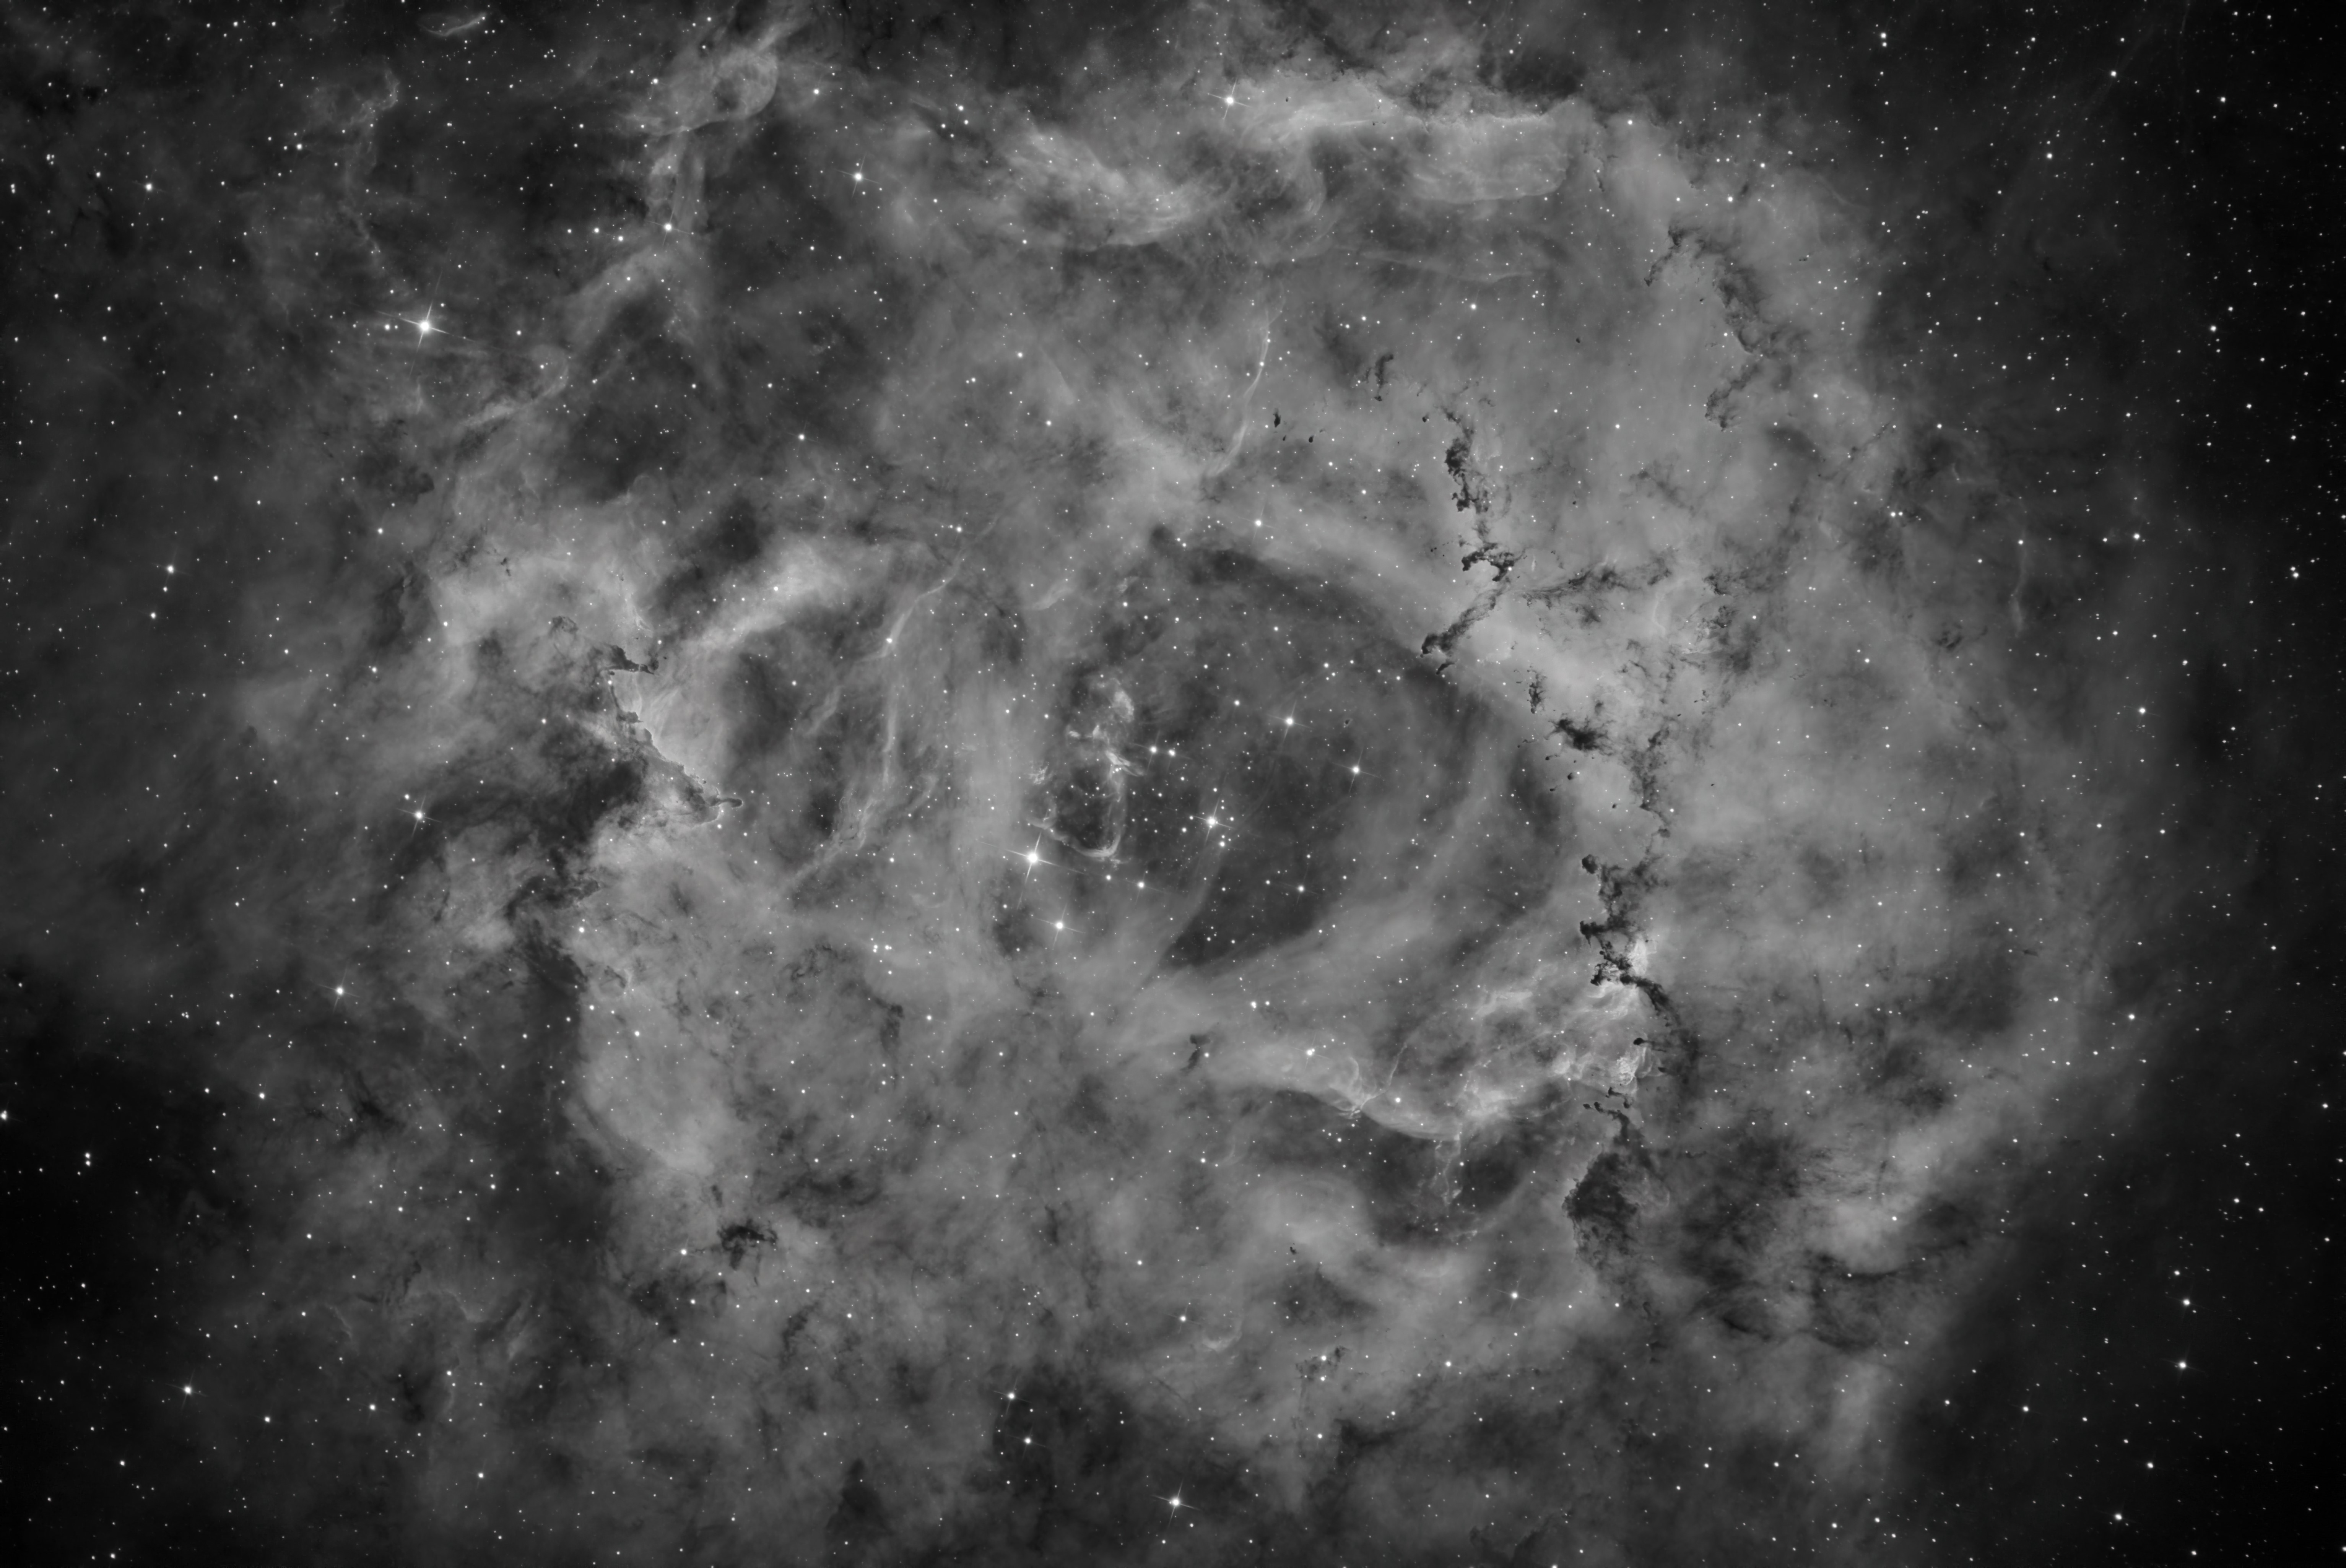 NGC 2237_Rosette nebula_2_denoised.jpg